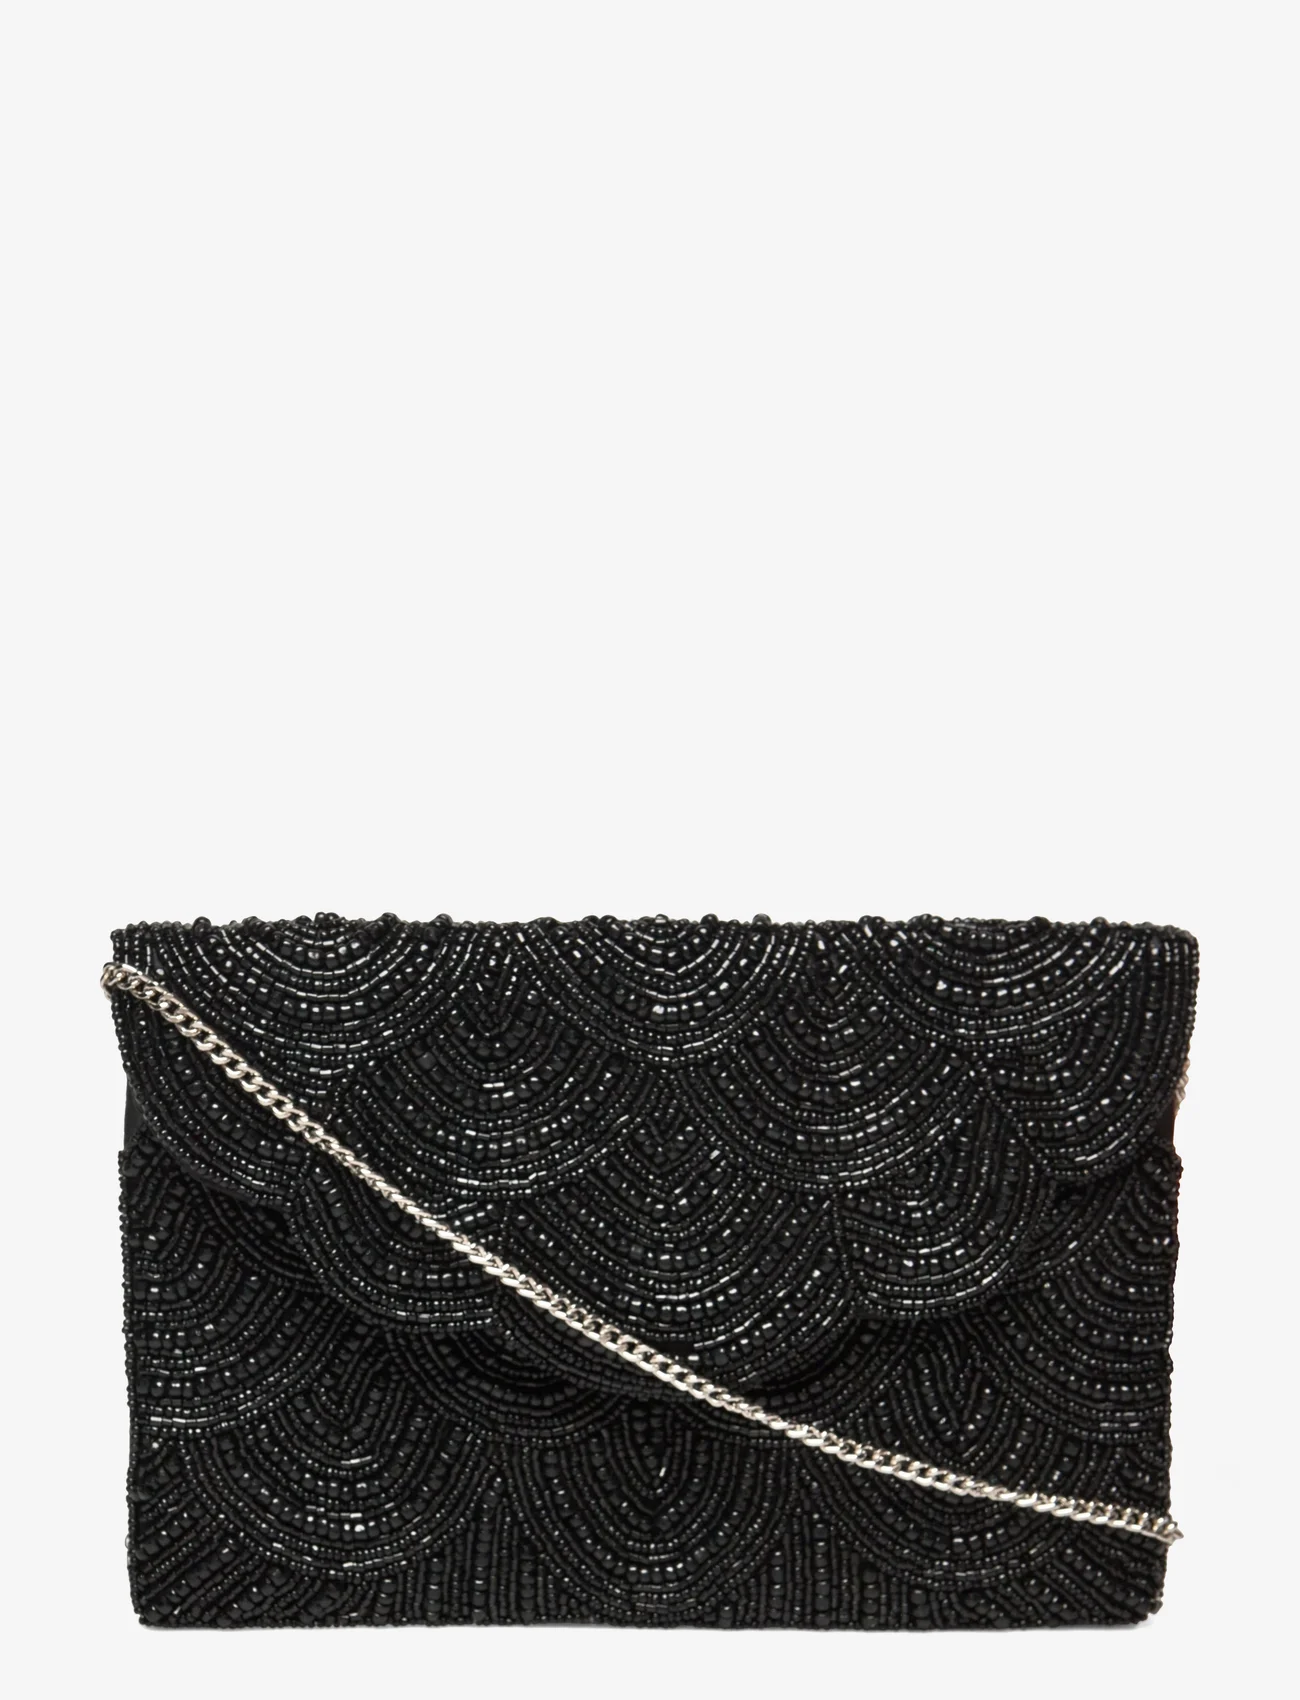 Pipol's Bazaar - Casablanca Black Clutch Bag - odzież imprezowa w cenach outletowych - multi - 0